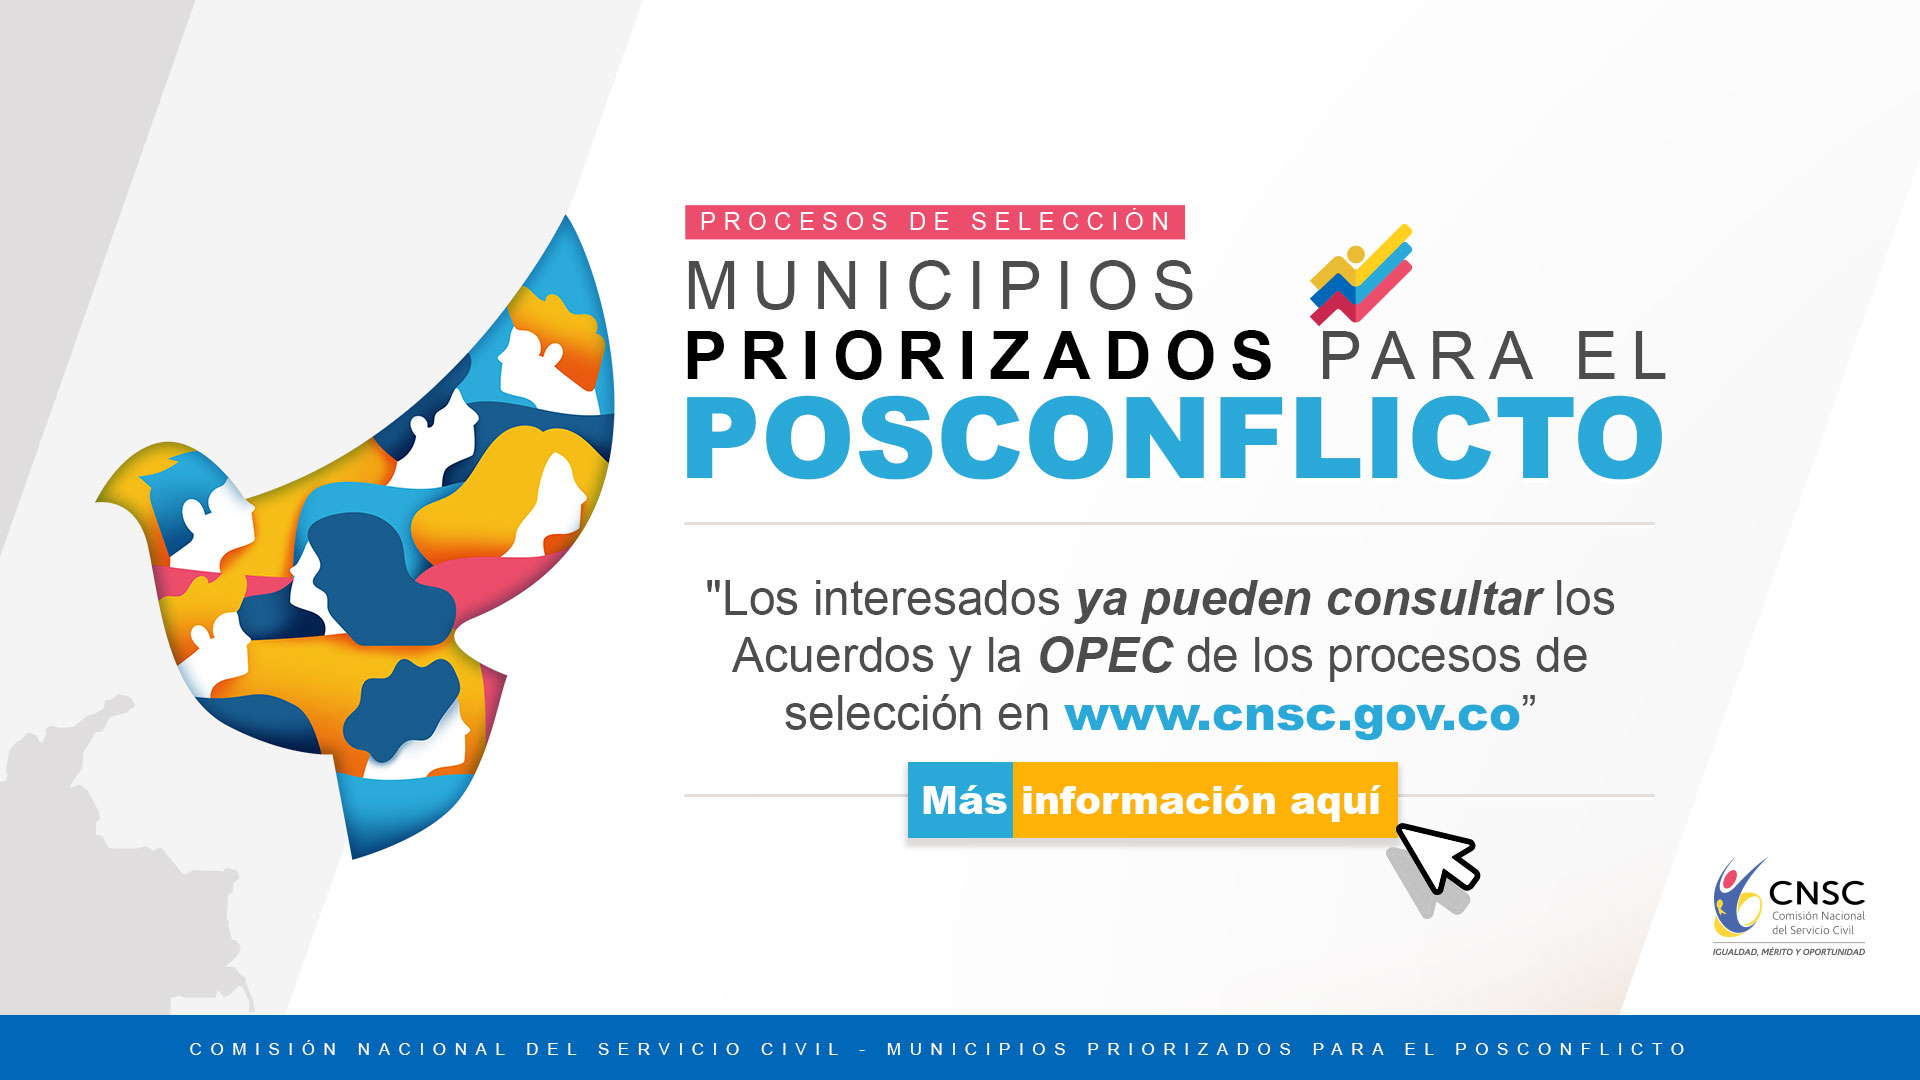 La Comisión Nacional del Servicio Civil invita a la ciudadanía a consultar la Oferta Pública de Empleos de Carrera OPEC, de Convocatorias CNSC unicipios priorizados